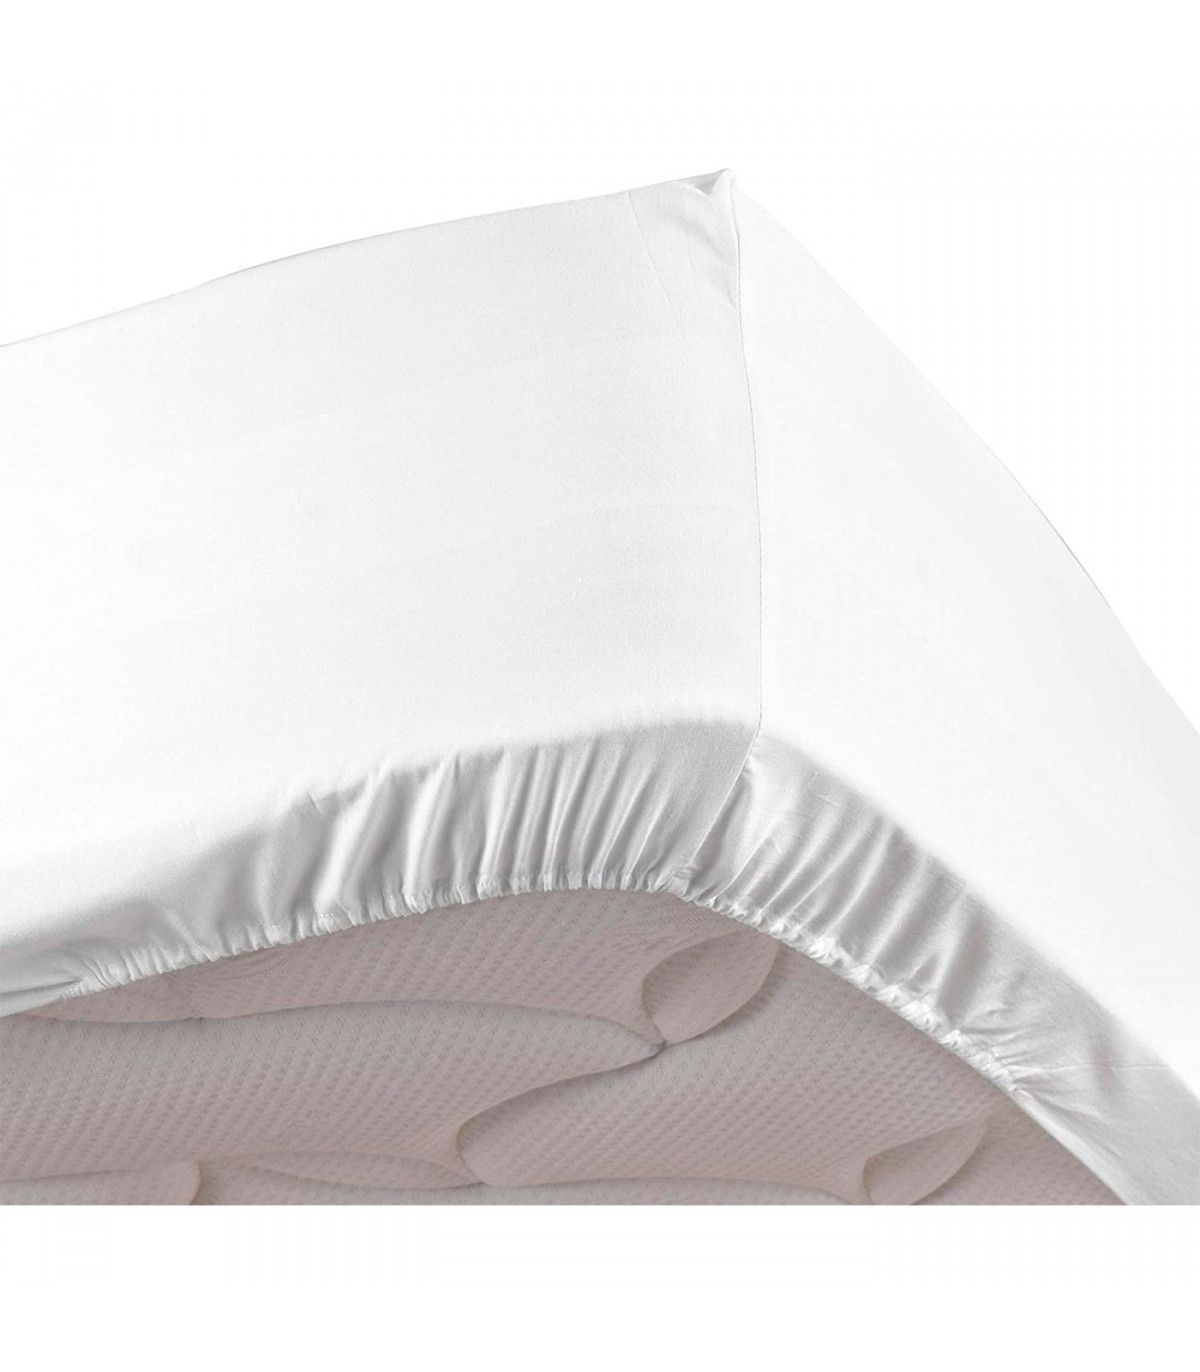 Tradineur - Sábana de algodón bajera ajustable para cama de 150, especial  pieles sensibles, suave y transpirable (Blanco, 150 x